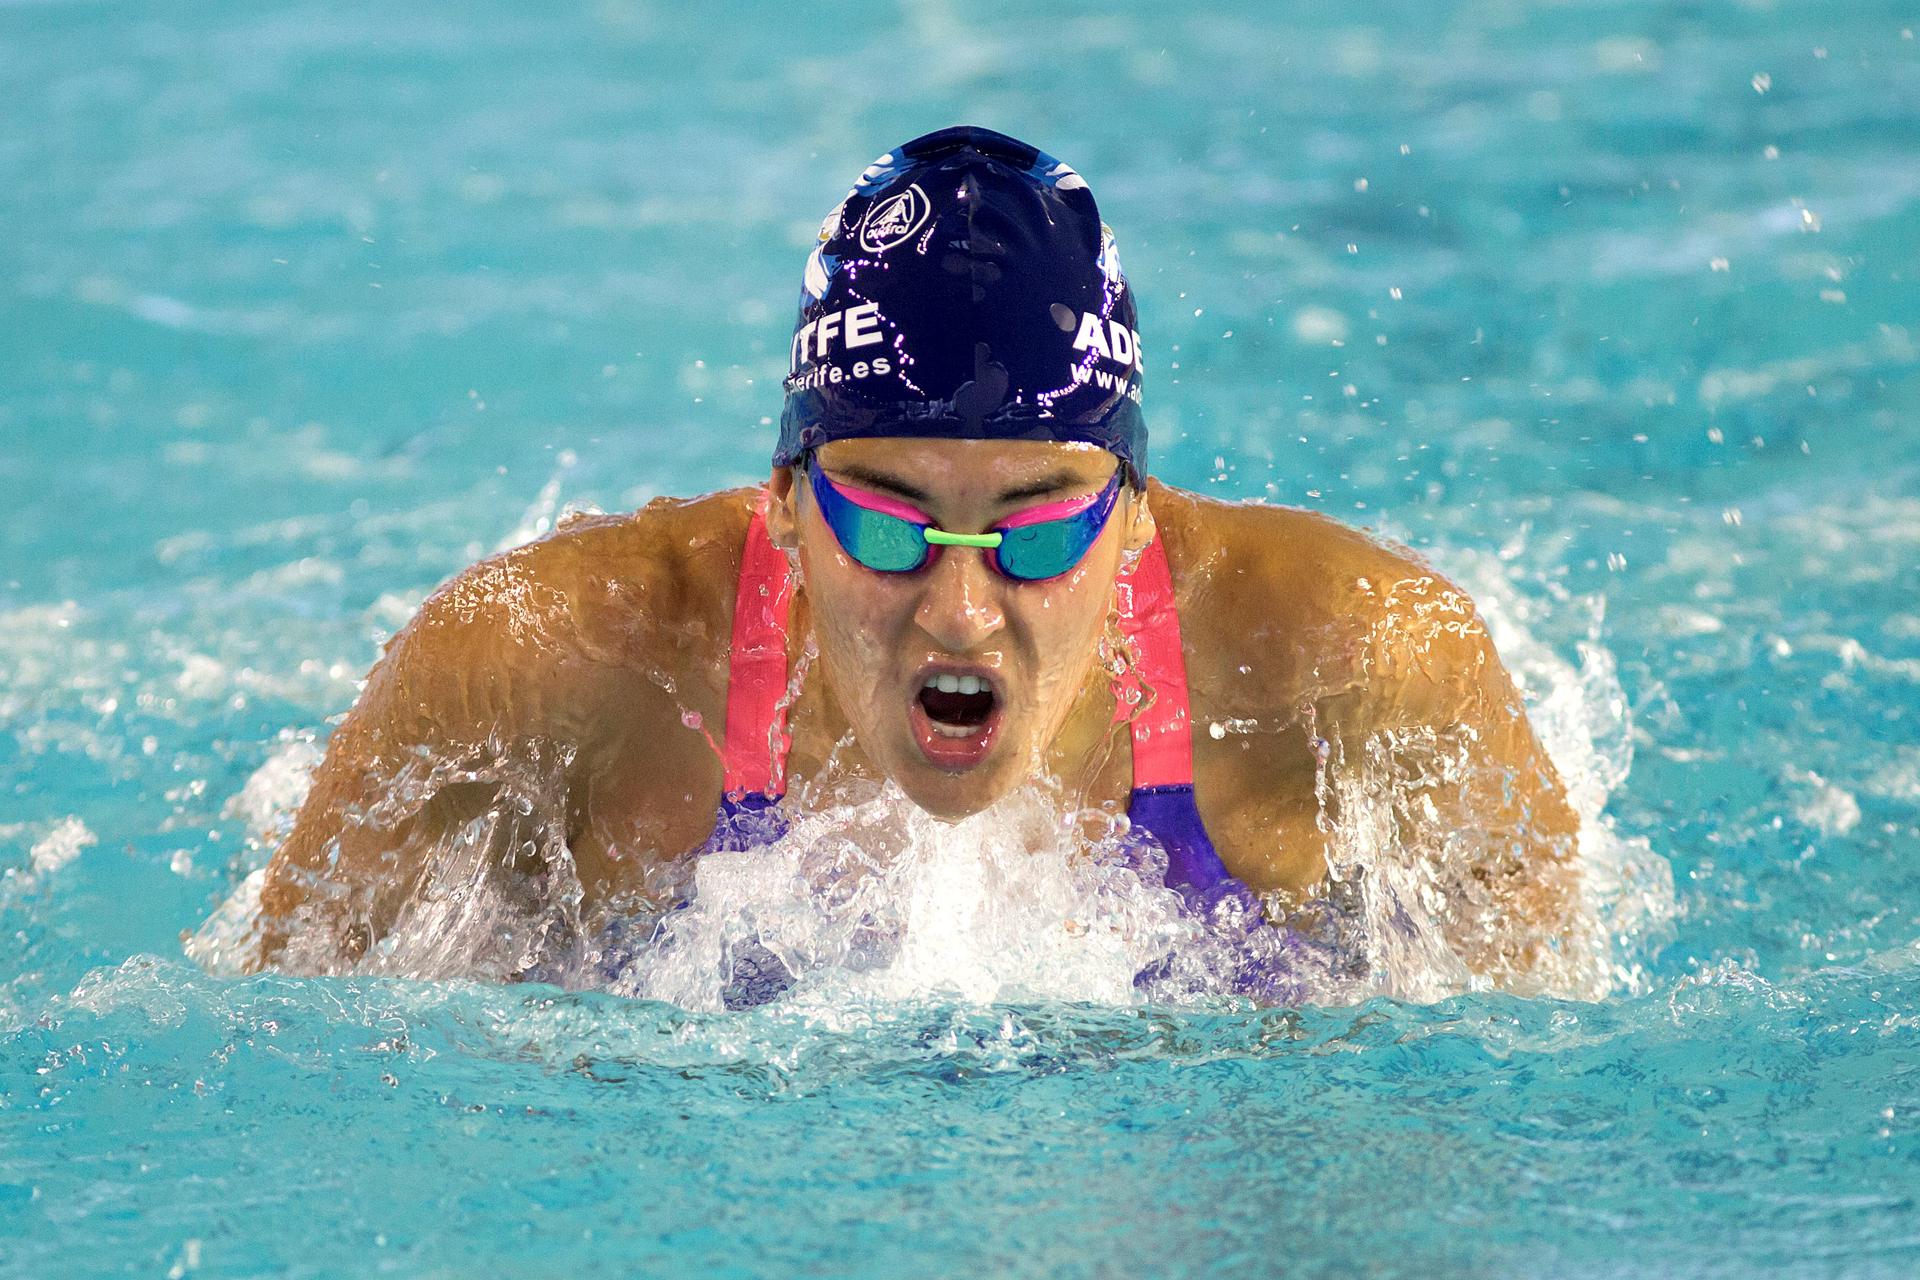 Foto de archivo de la nadadora tinerfeña Michelle Alonso. EFE/Daniel Pérez